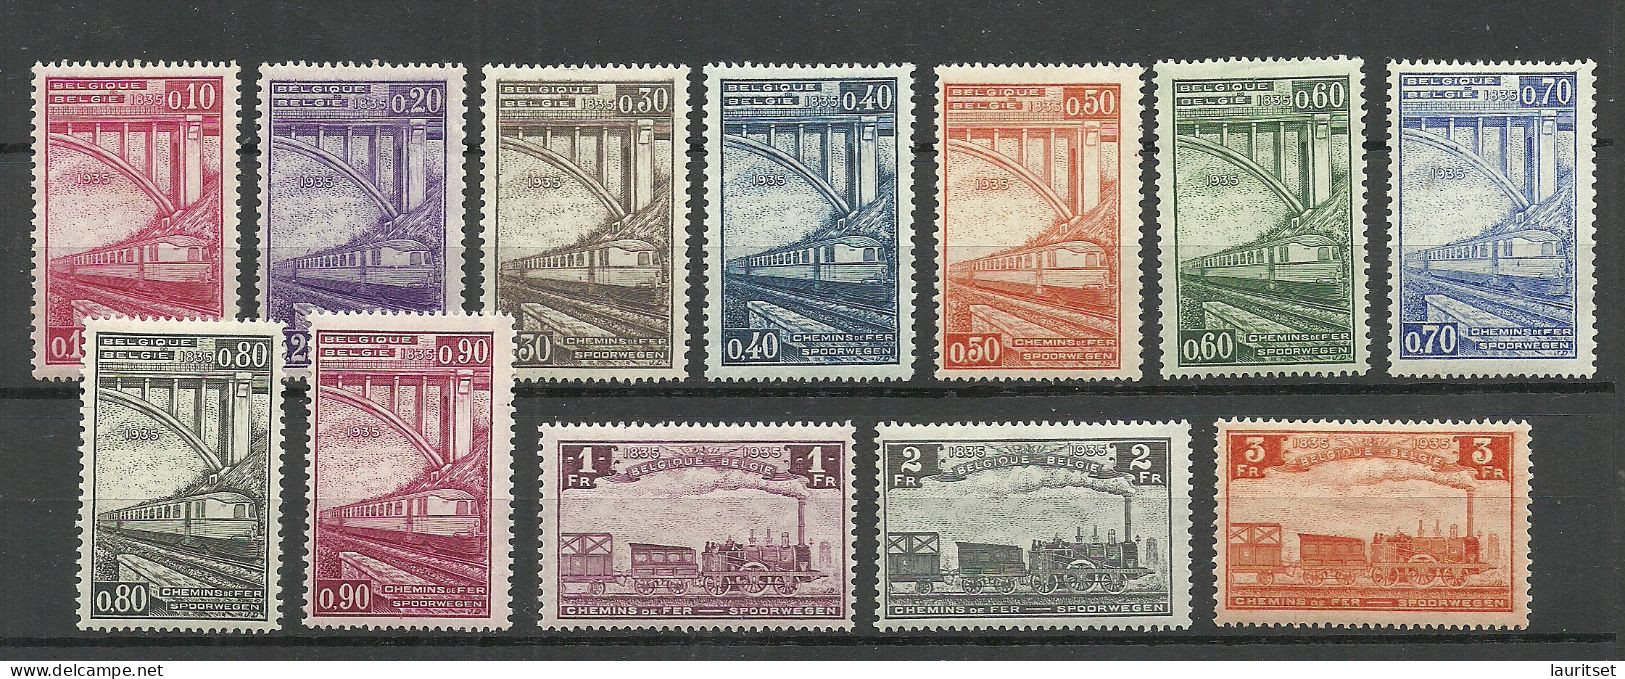 BELGIEN Belgium Belgique 1935 Michel 171 - 182 Eisenbahnpaketmarken Railway Packet Stamps * - Postfris